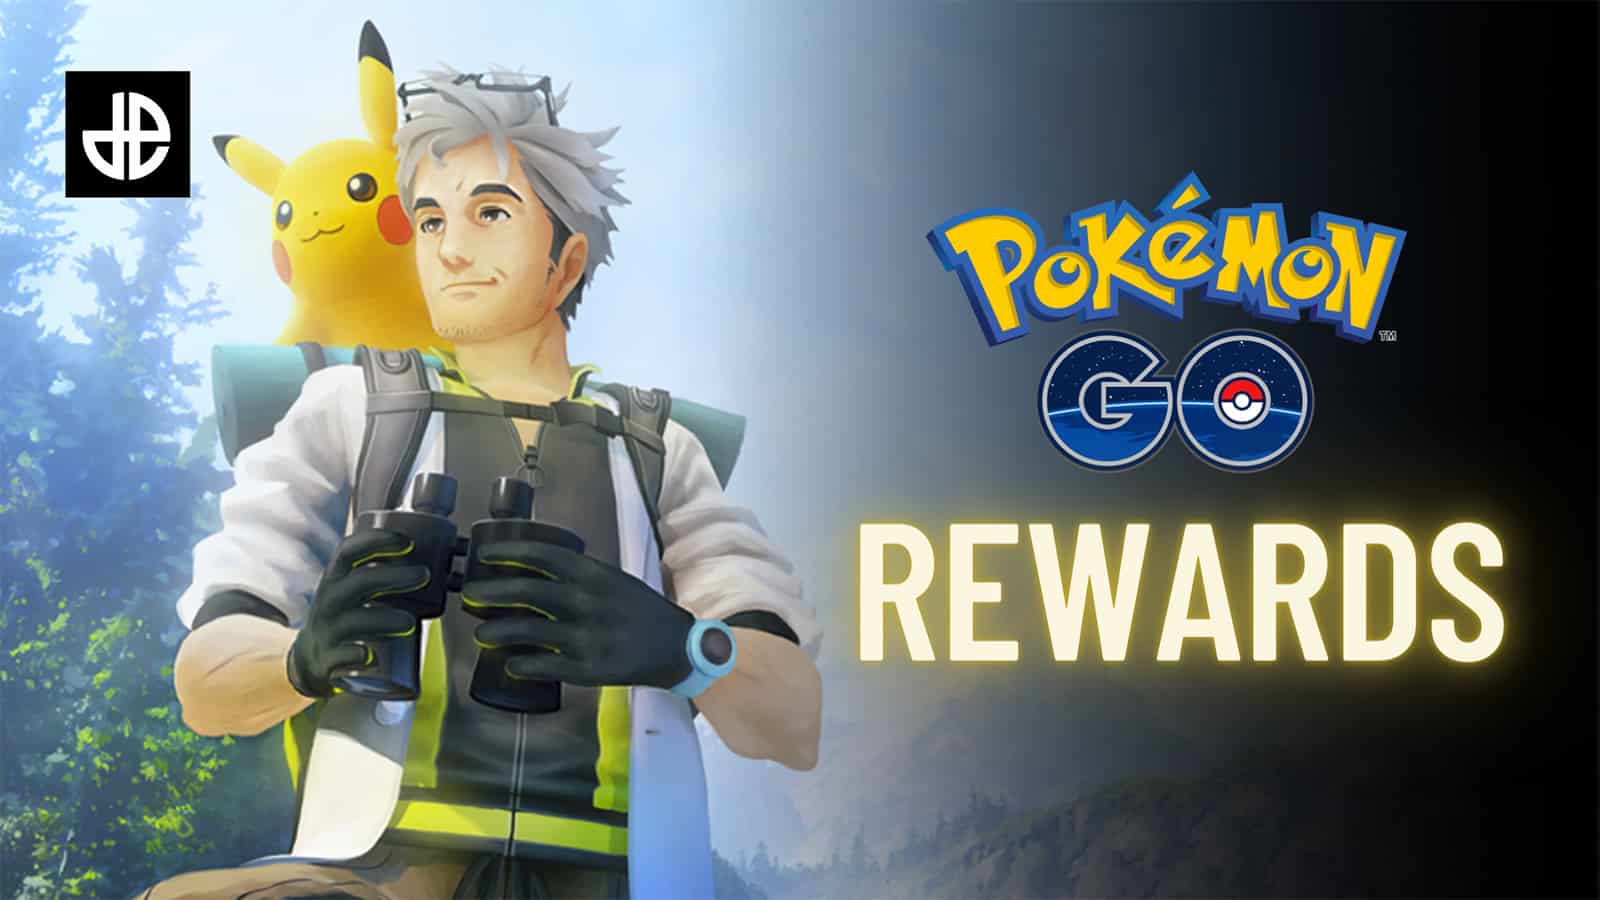 Pokemon Go Prime Gaming rewards